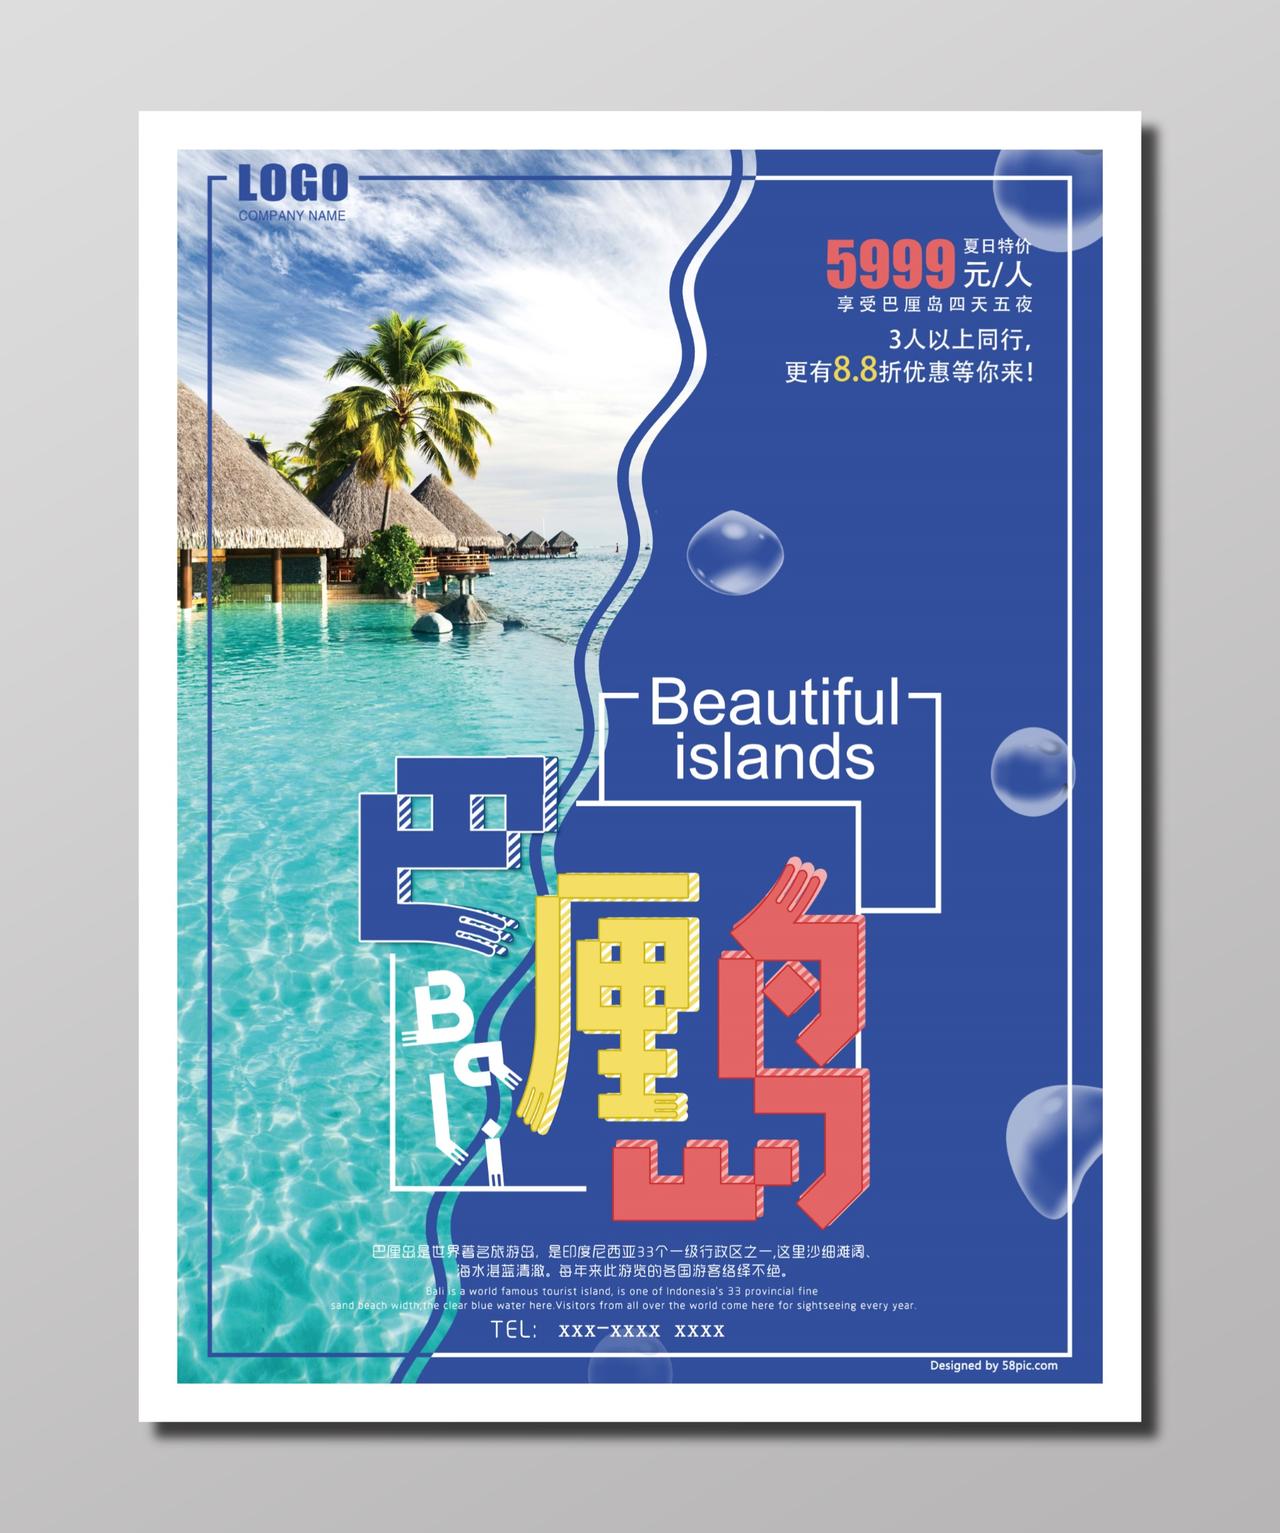 旅游观光巴厘岛旅行浪漫动人巴厘岛跟团游旅游线路海报设计宣传单